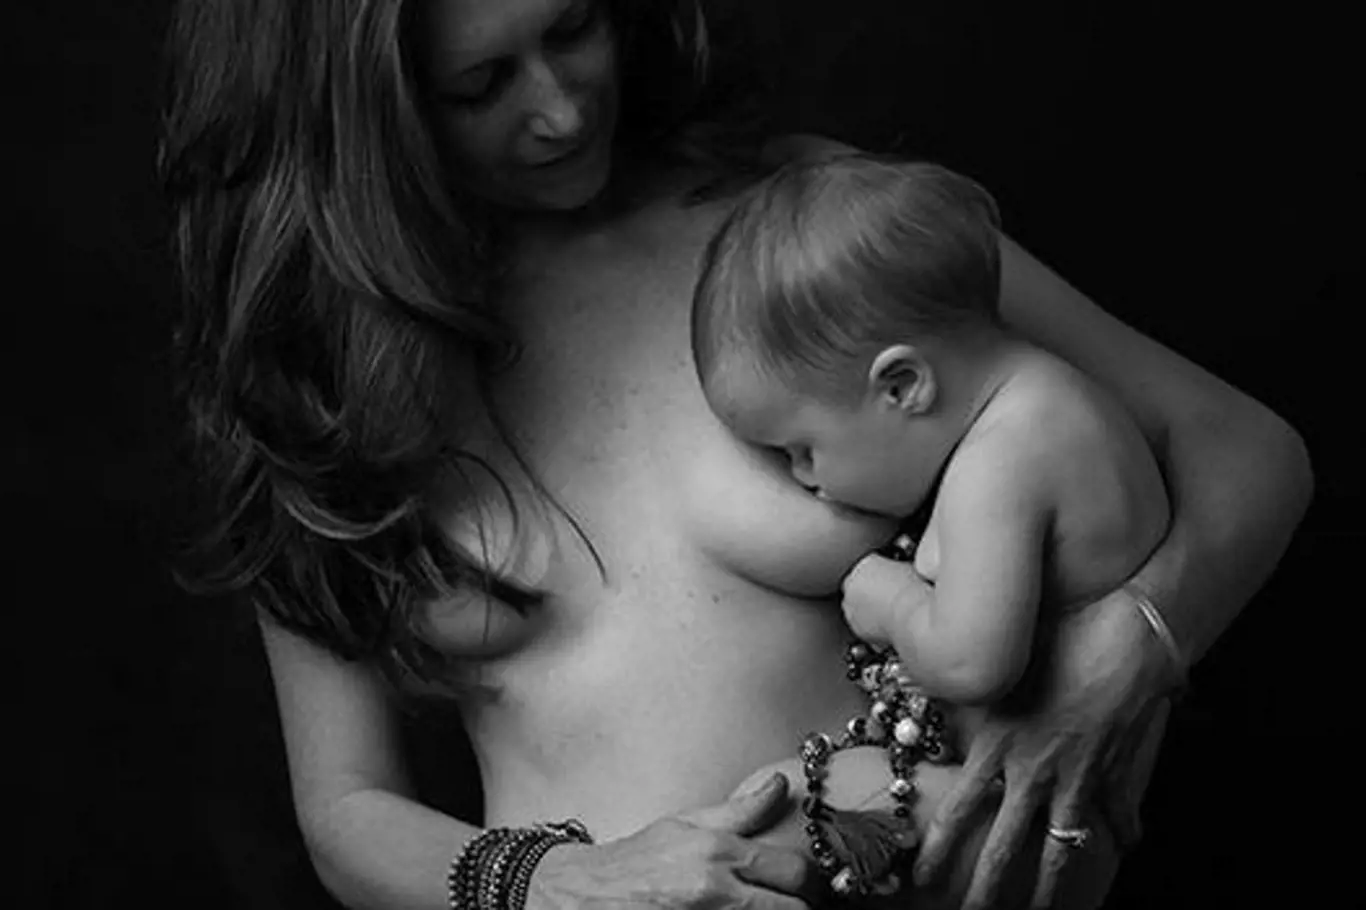 Odhalené fotky kojících nebo těhotných žen: Patří toto na sociální sítě?